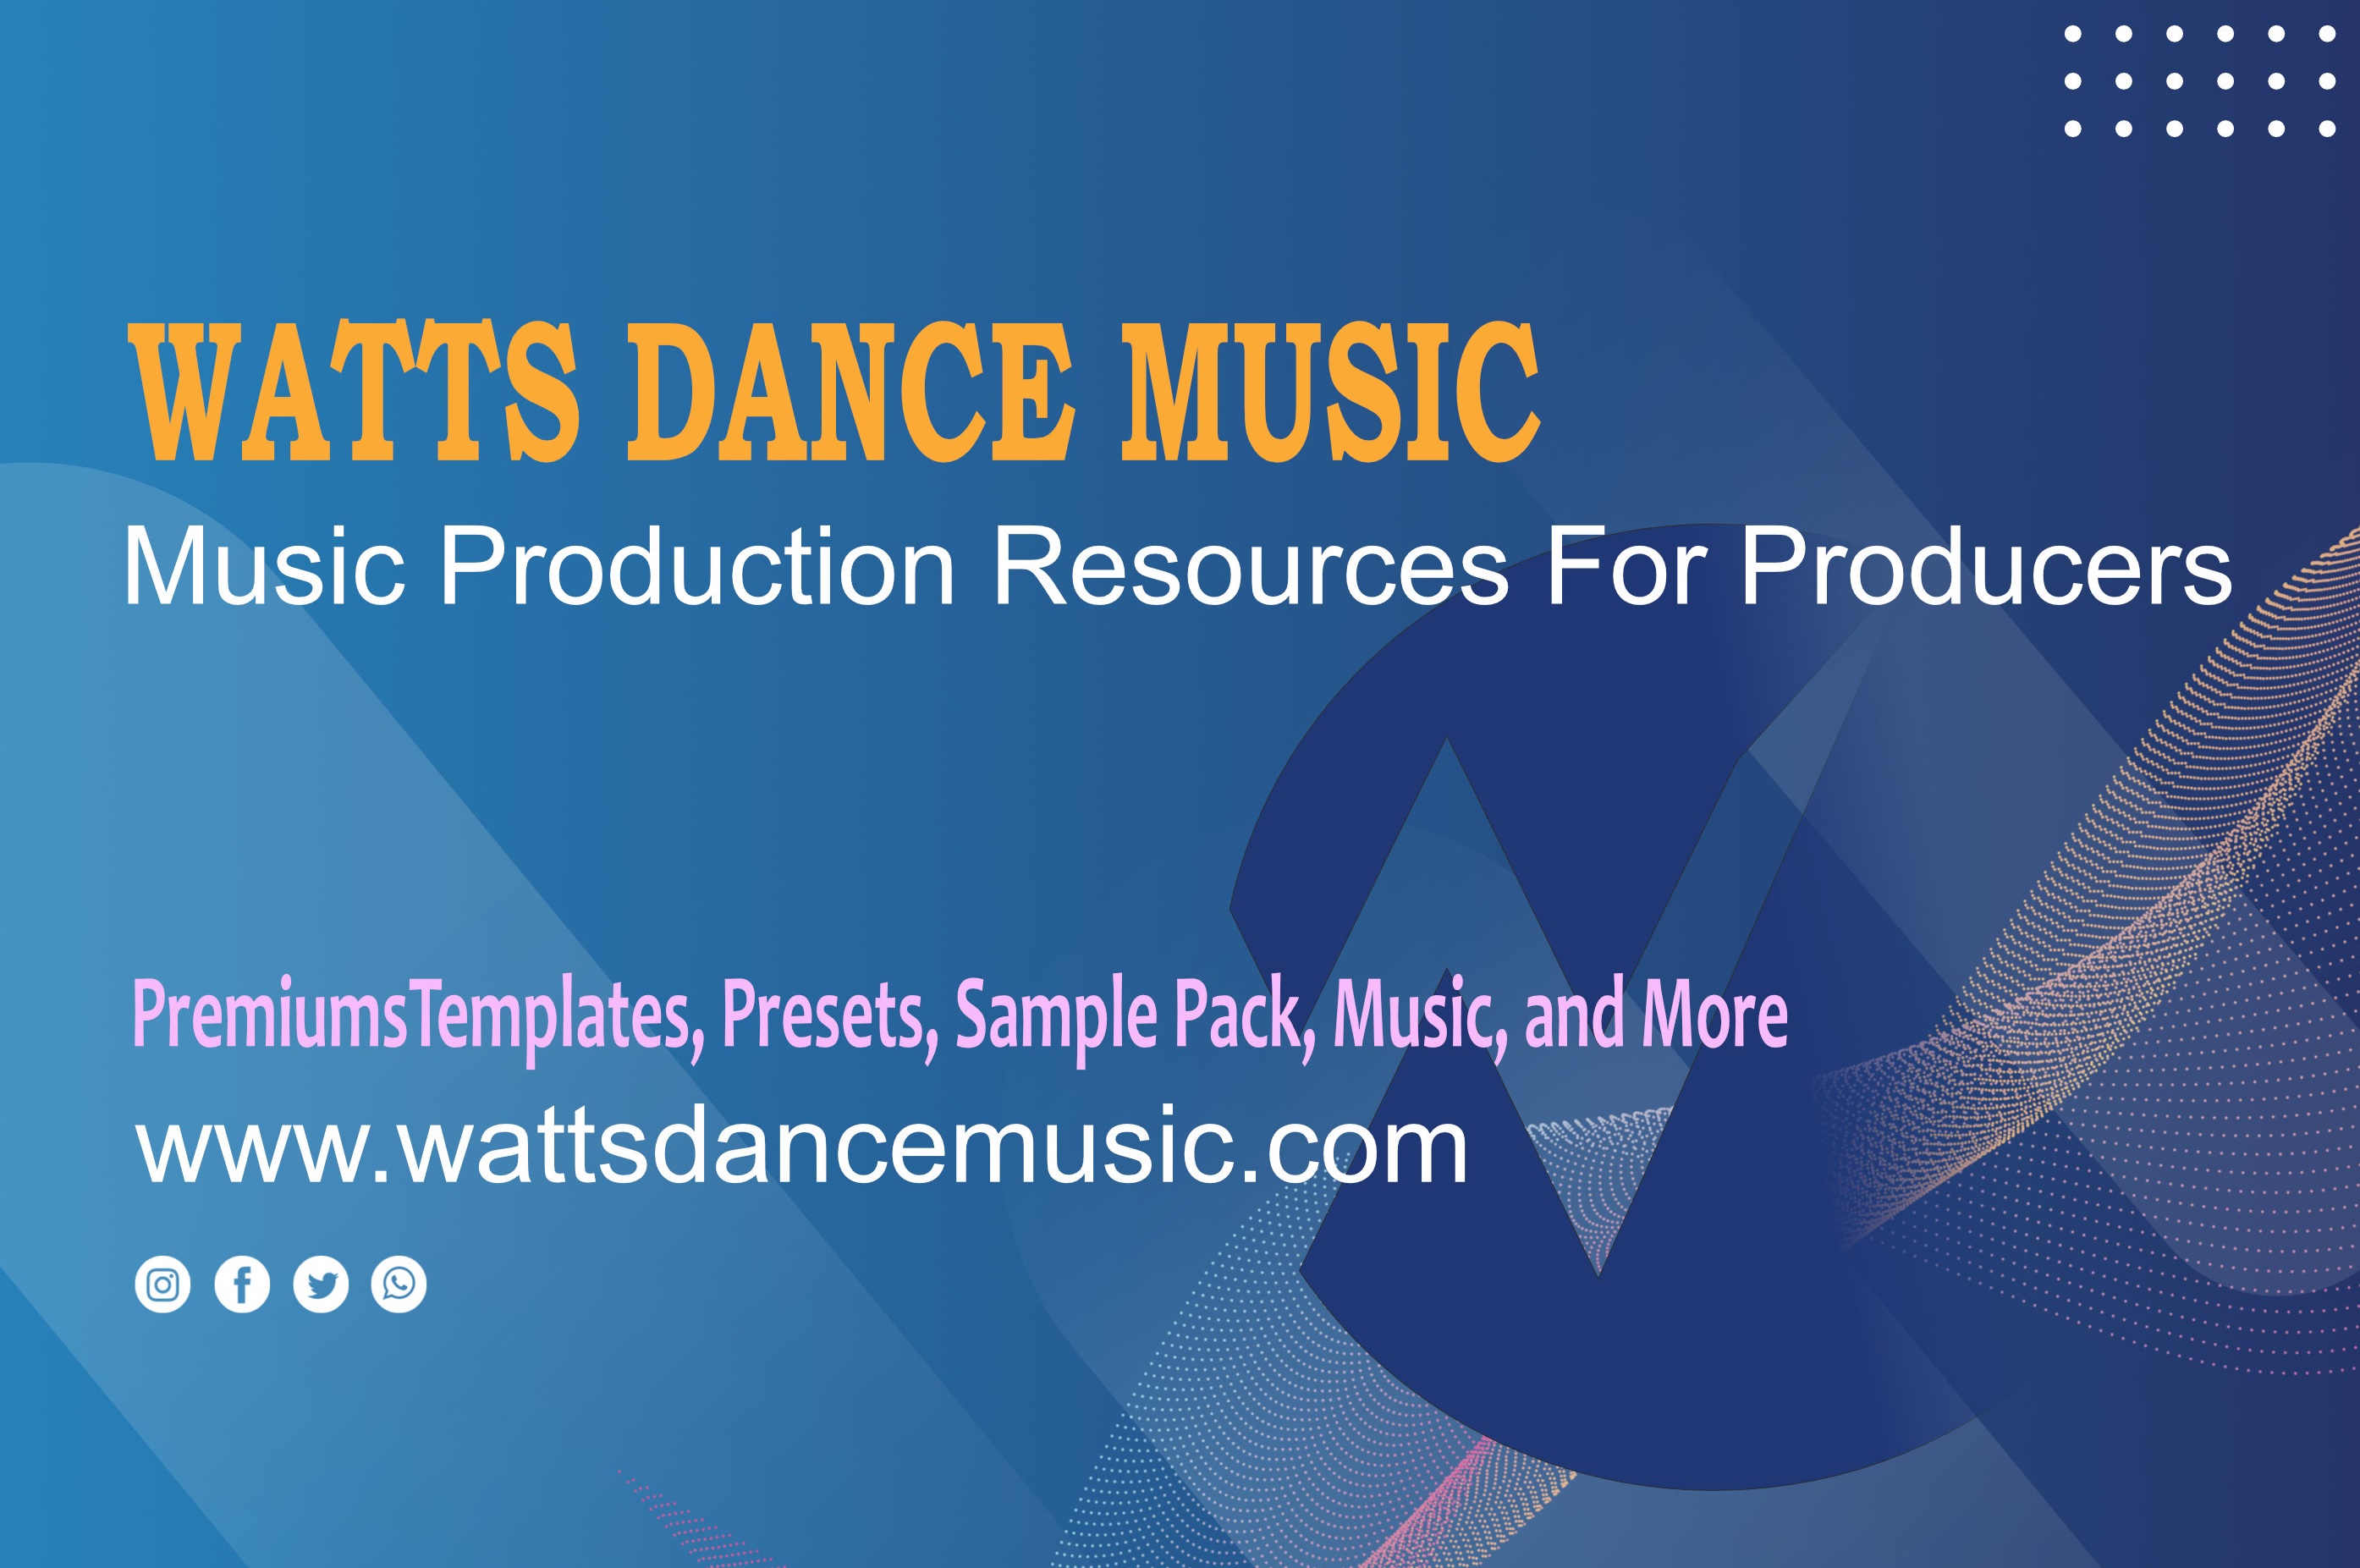 wattsdancemusic.com